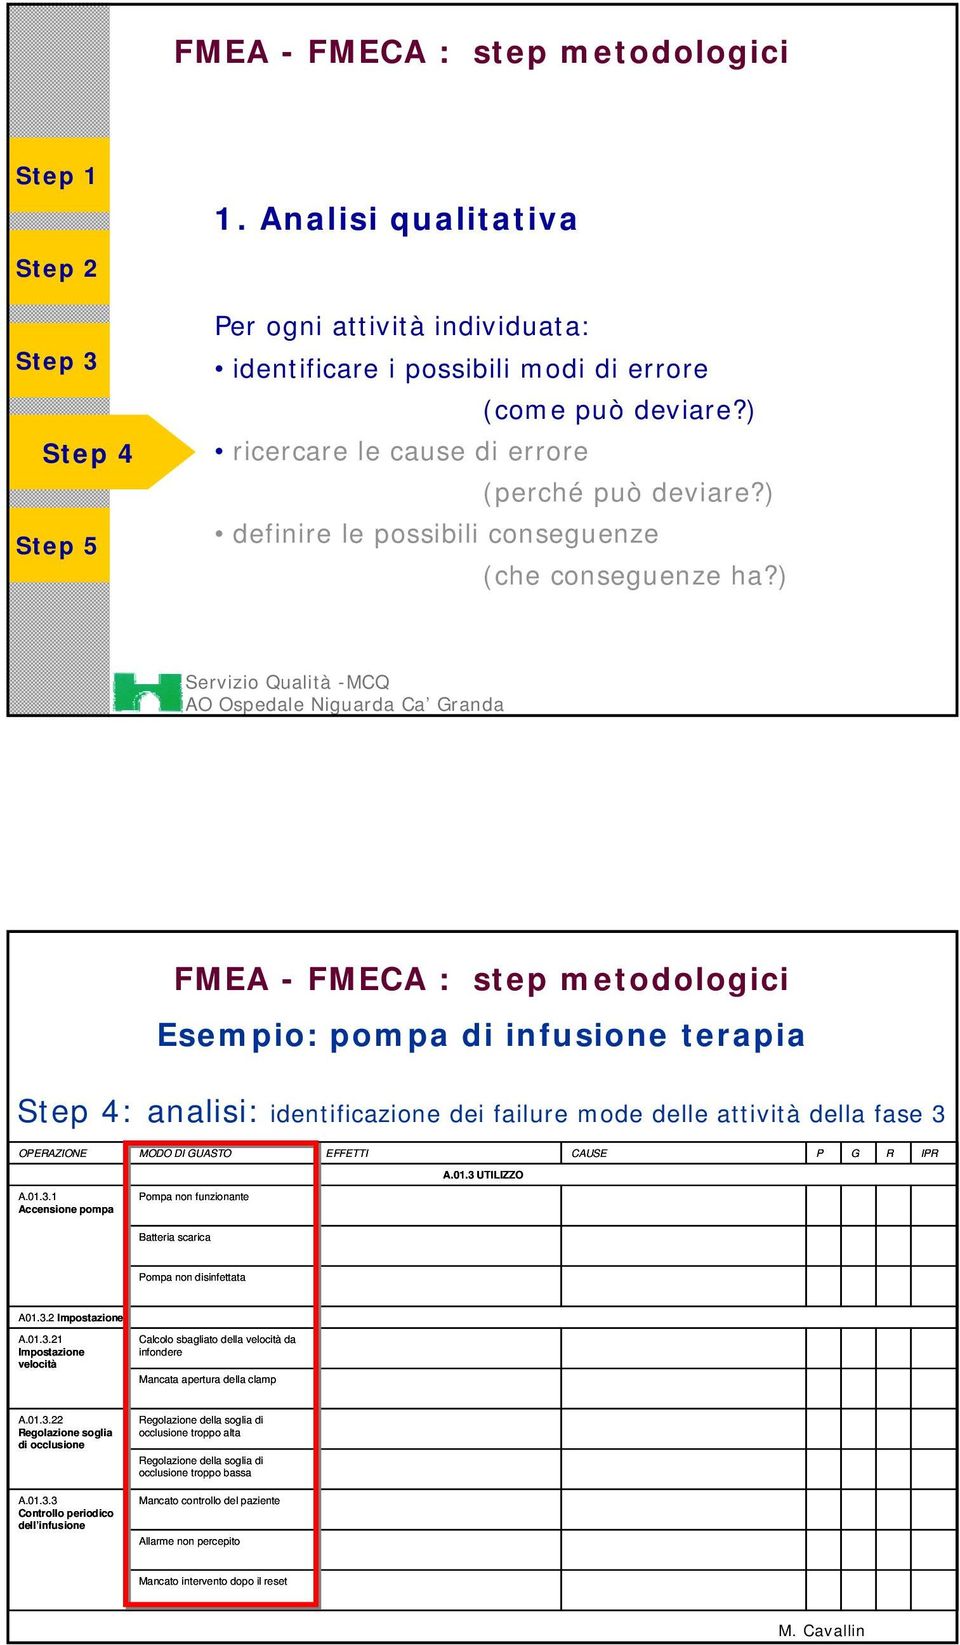 ) FMEA - FMECA : step metodologici Esempio: pompa di infusione terapia : analisi: identificazione dei failure mode delle attività della fase 3 OPERAZIONE MODO DI GUASTO EFFETTI CAUSE P G R IPR A.01.